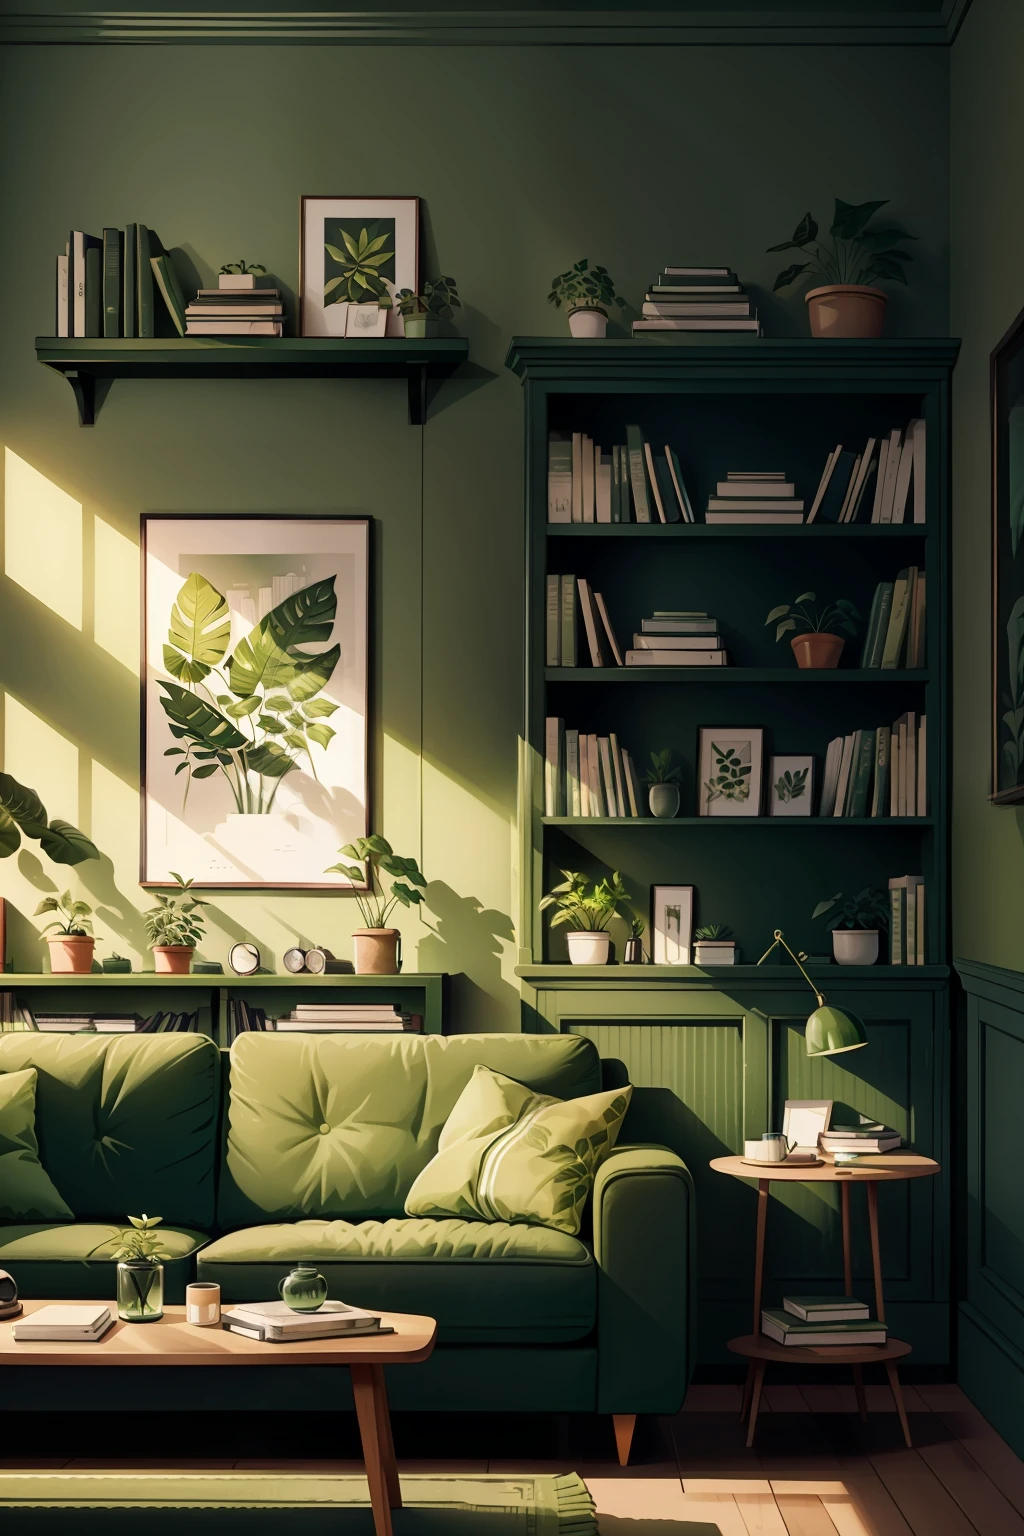 гостиная с зеленым диваном, зеленым растением на стене и книжной полкой с книгами